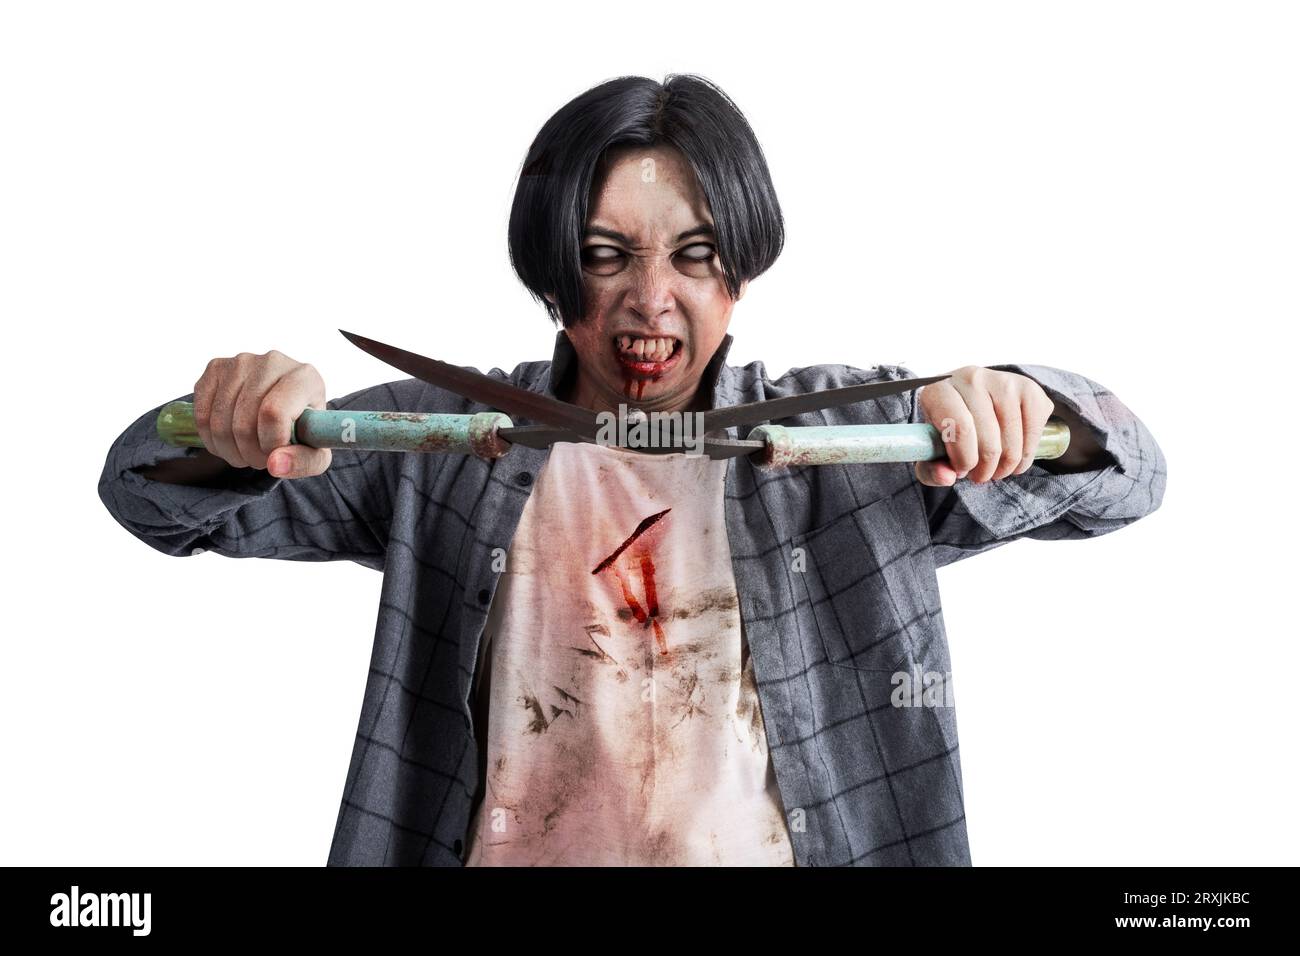 Un zombi aterrador con sangre y heridas en su cuerpo caminando mientras lleva un cortador de hierba aislado sobre un fondo blanco Foto de stock